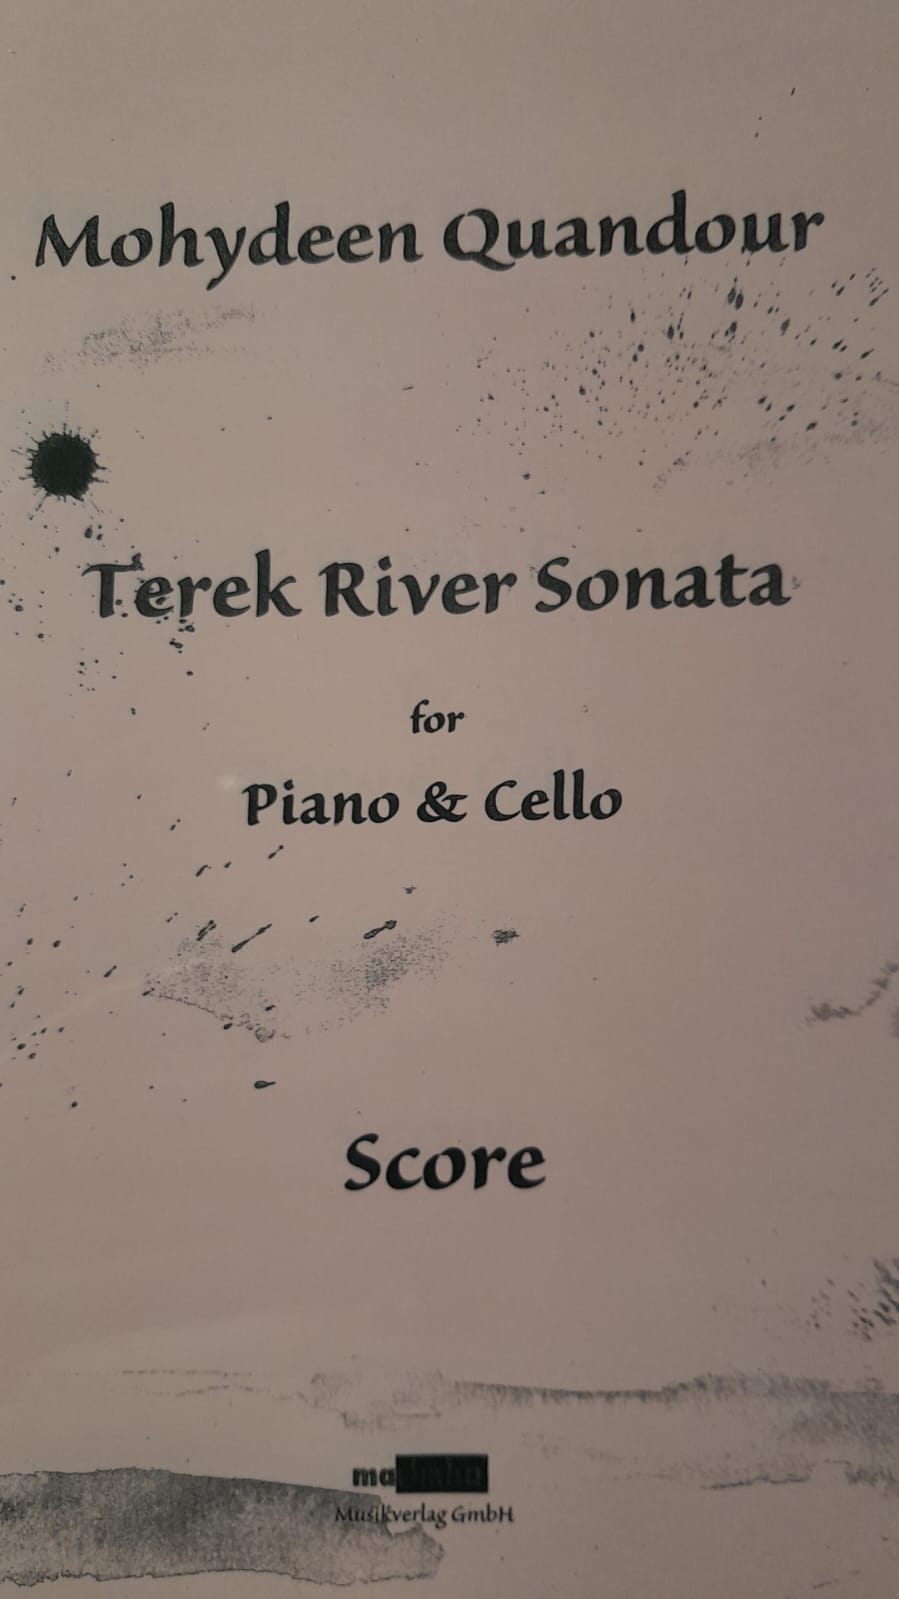 Terek River Sonata for Piano & Cello